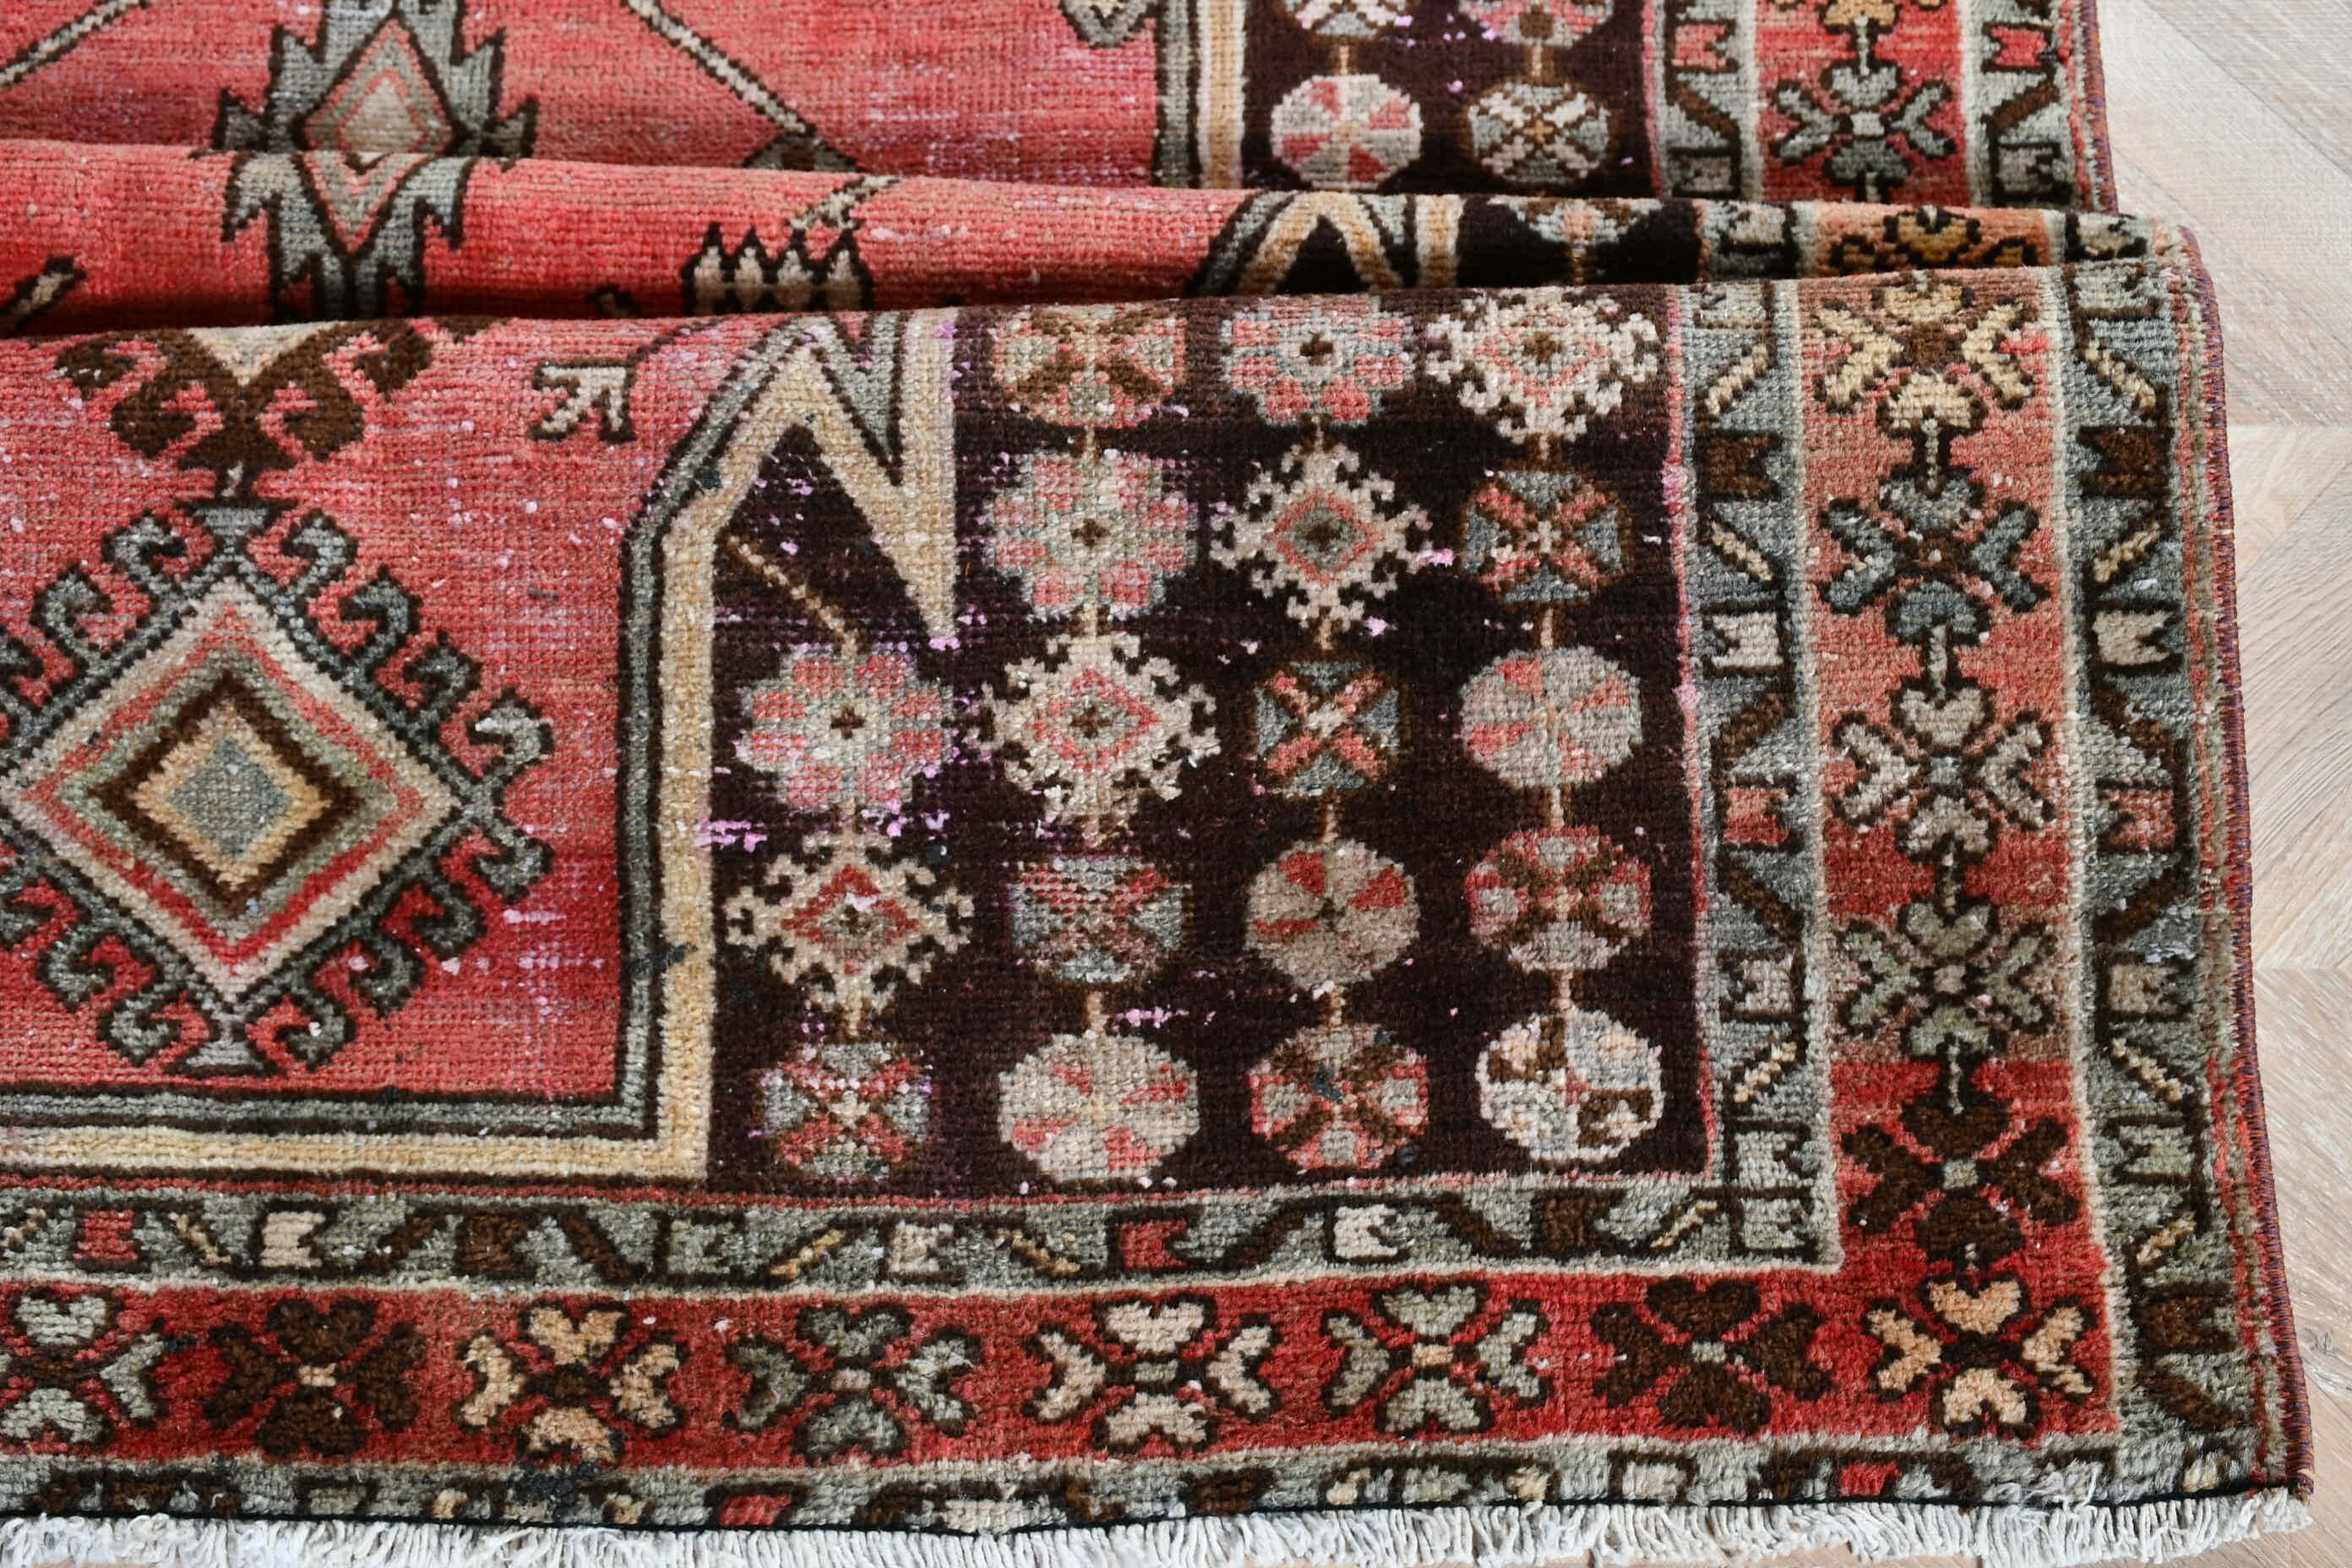 Floor Rug, Turkish Rug, Bedroom Rug, 4x6.3 ft Area Rug, Rugs for Indoor, Wool Rug, Vintage Rug, Orange Moroccan Rugs, Nursery Rugs